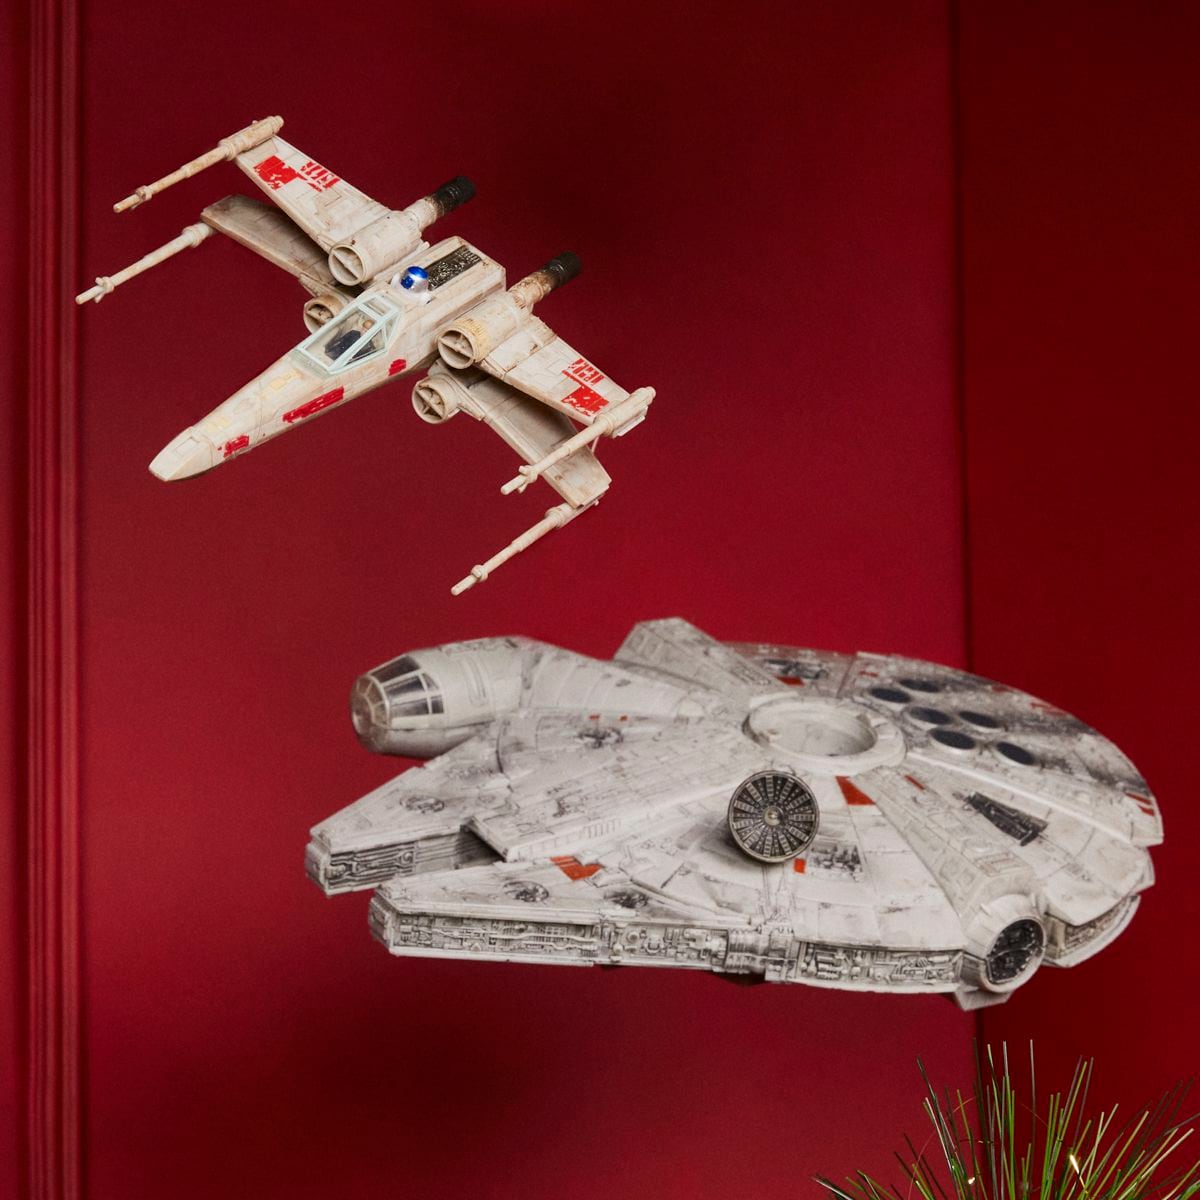 Dos juguetes para amantes de Star Wars: la nave Ala X y el Millennium Falcon, de Hasbro